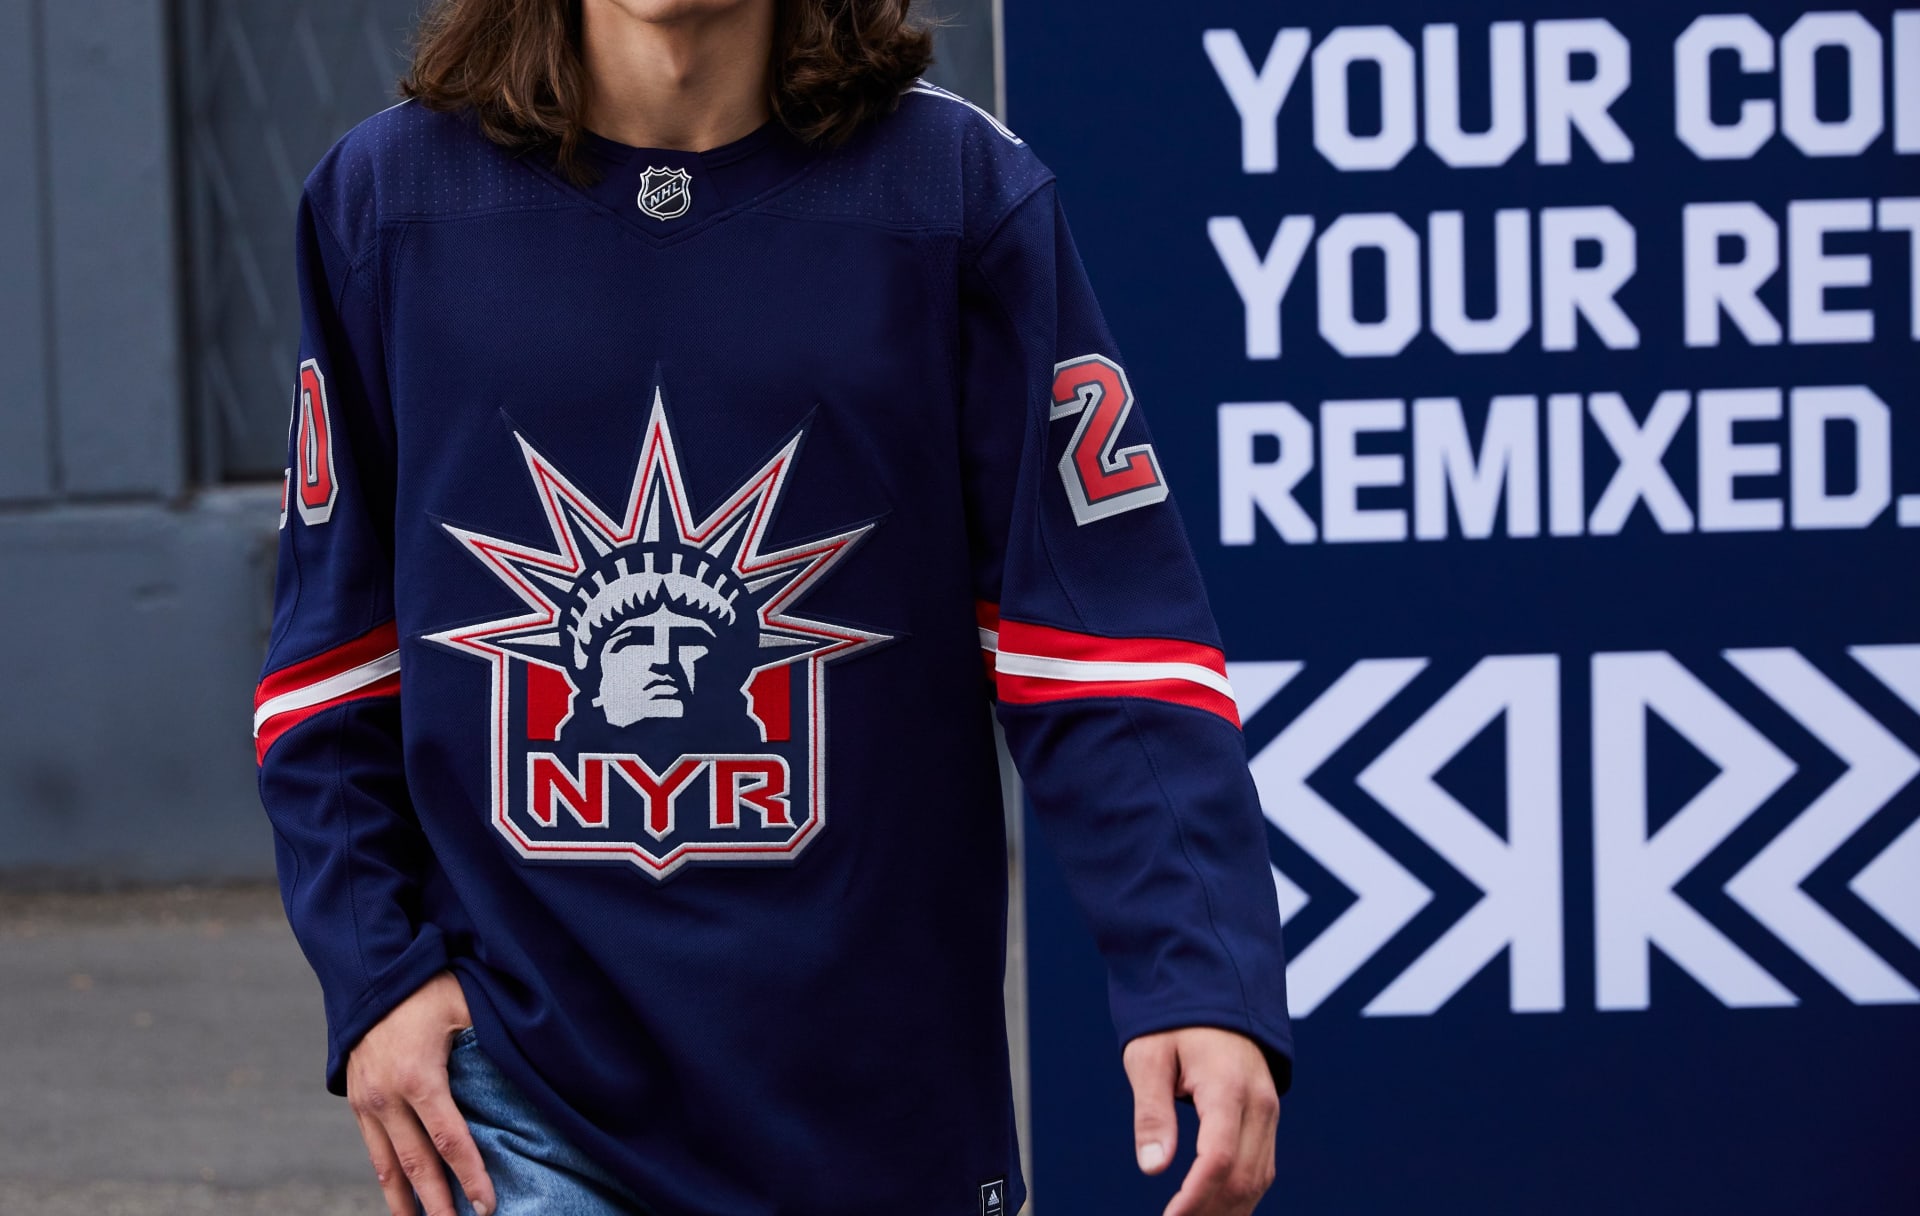 NEW YORK RANGERS | Před 24 lety se poprvé na dresech newyorských Rangers objevila Socha svobody, postupem času z nich zmizela. V následující sezoně se ikonická stavba vrací na scénu.